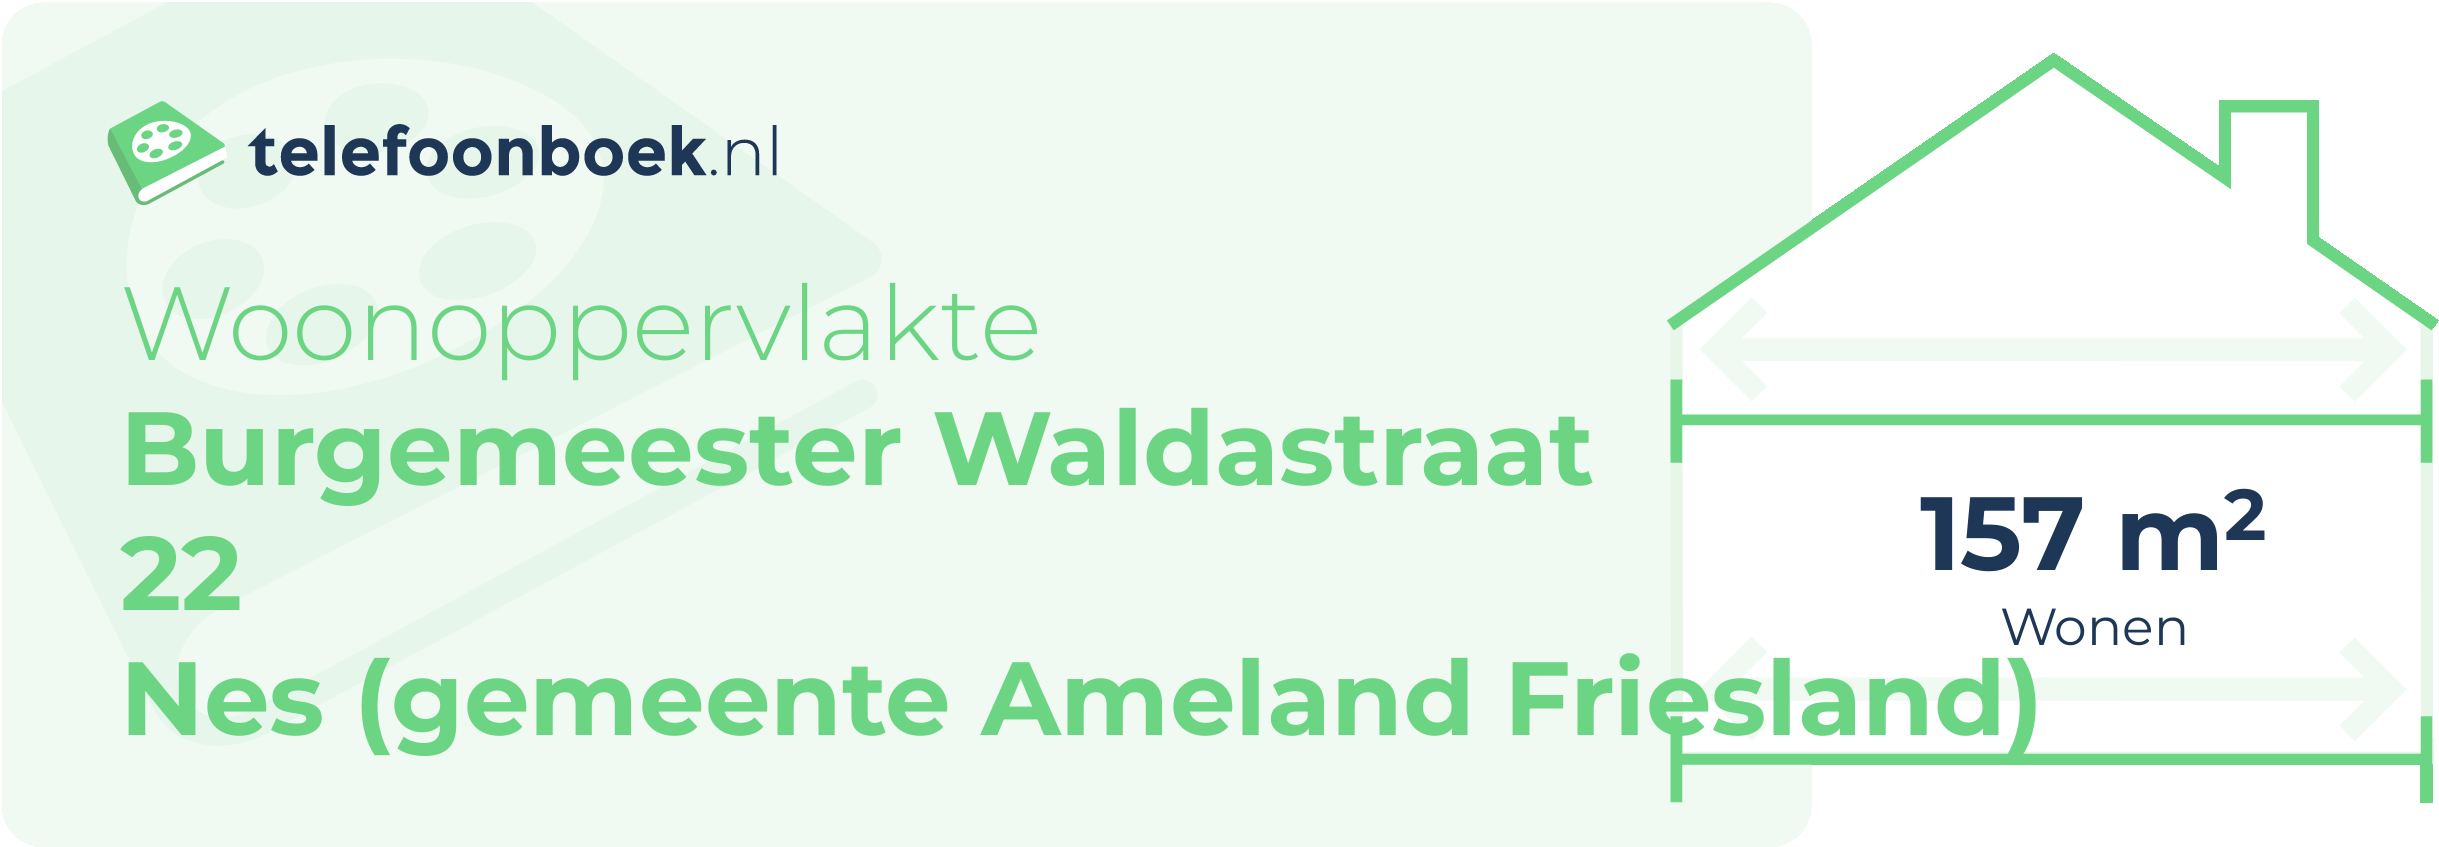 Woonoppervlakte Burgemeester Waldastraat 22 Nes (gemeente Ameland Friesland)